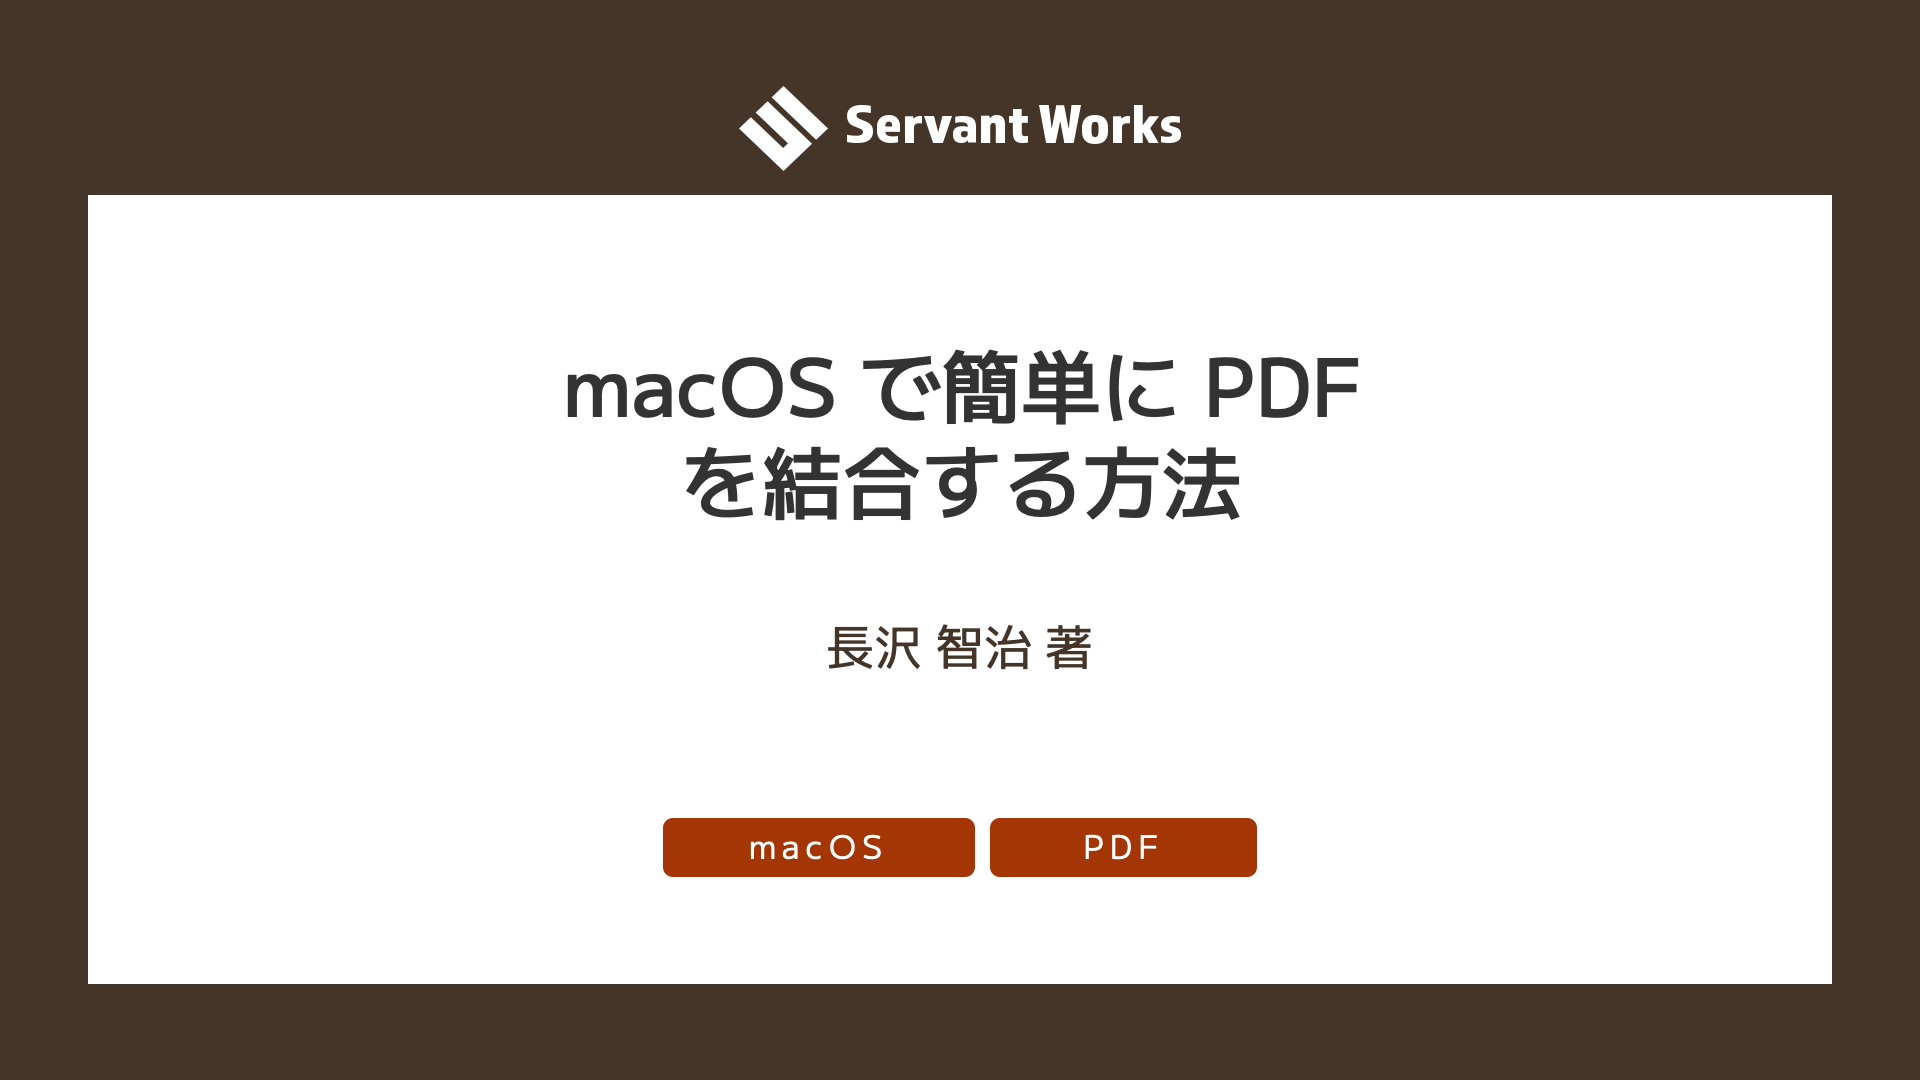 macOS で簡単に PDF を結合する方法 | サーバントワークス株式会社